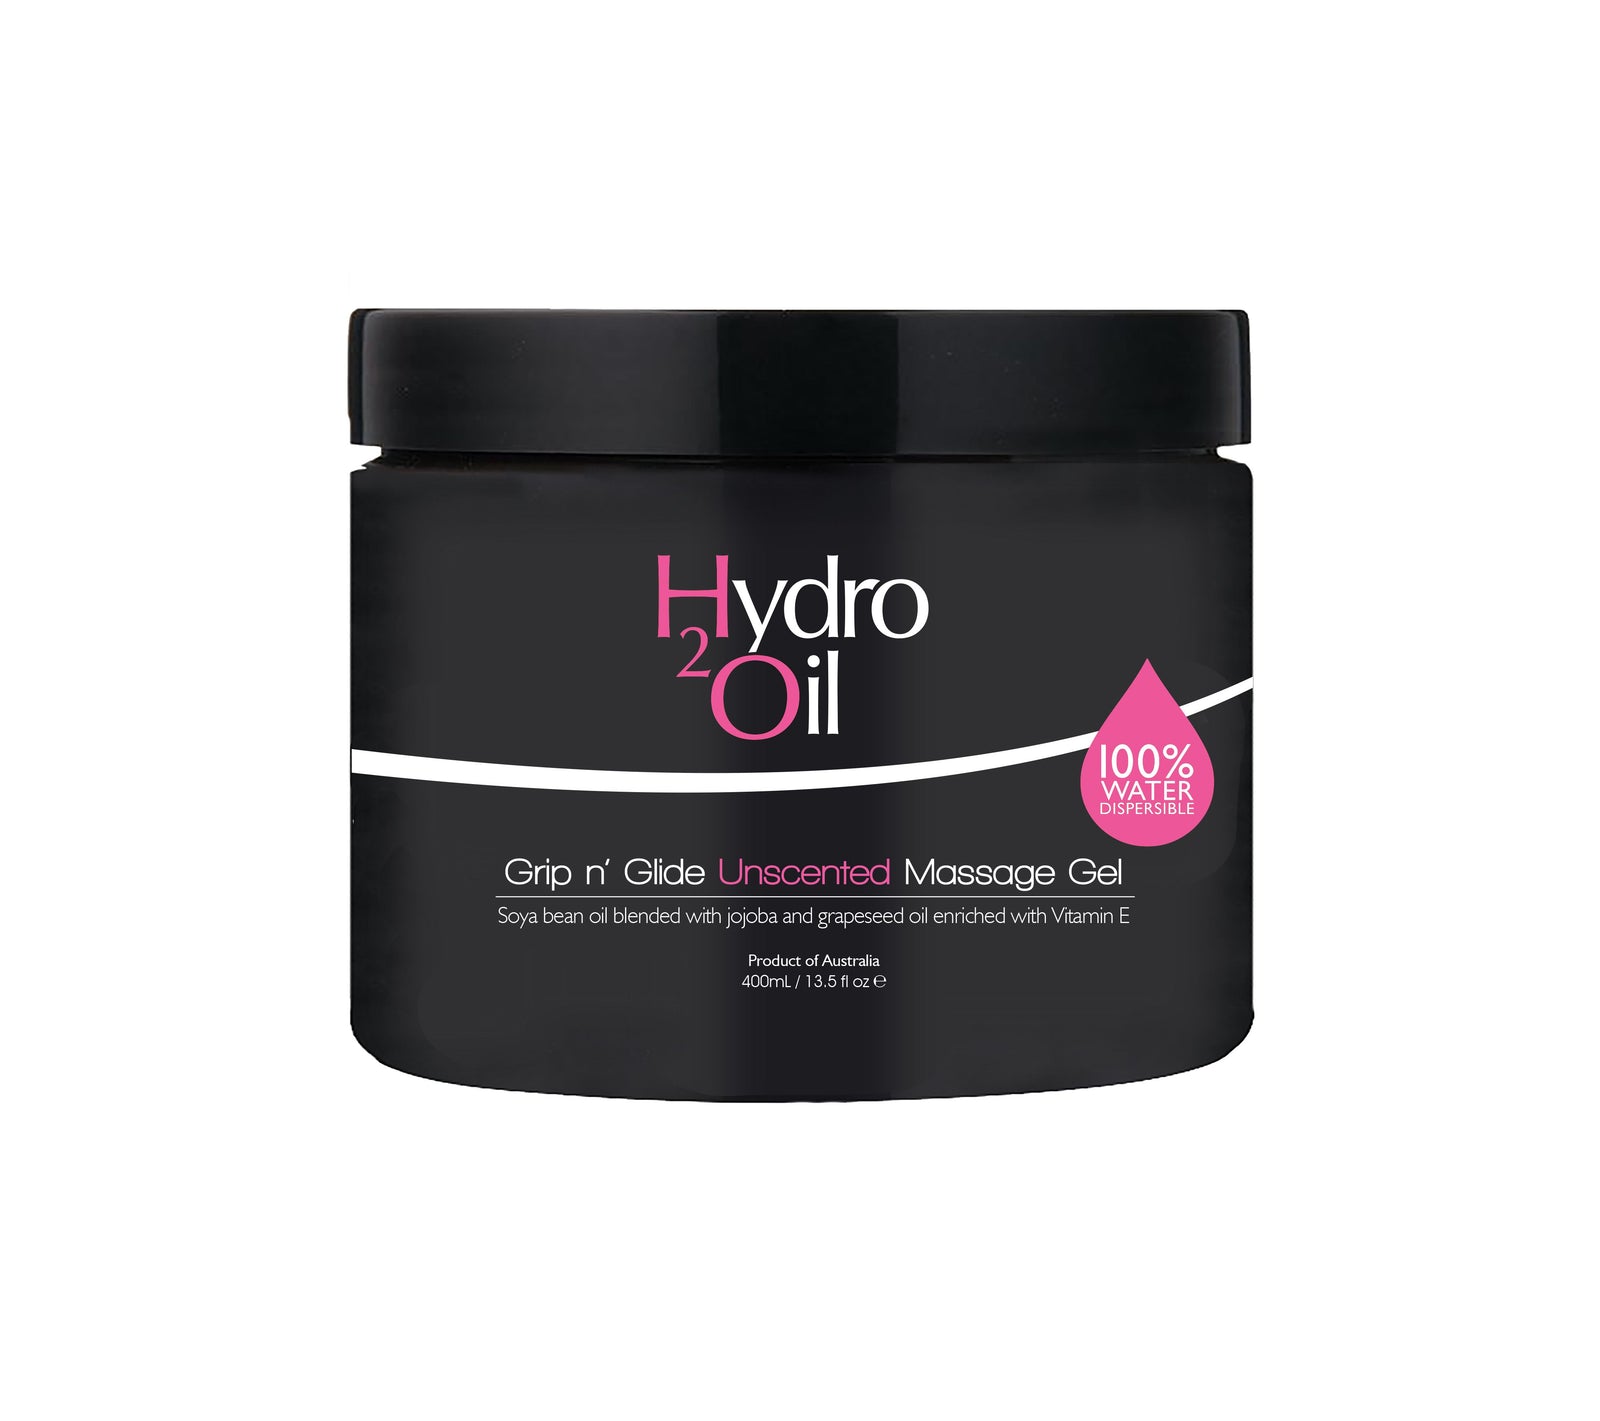 Hydro 2 Oil Grip 'n' Glide Massage Gel - Unscented 400ml